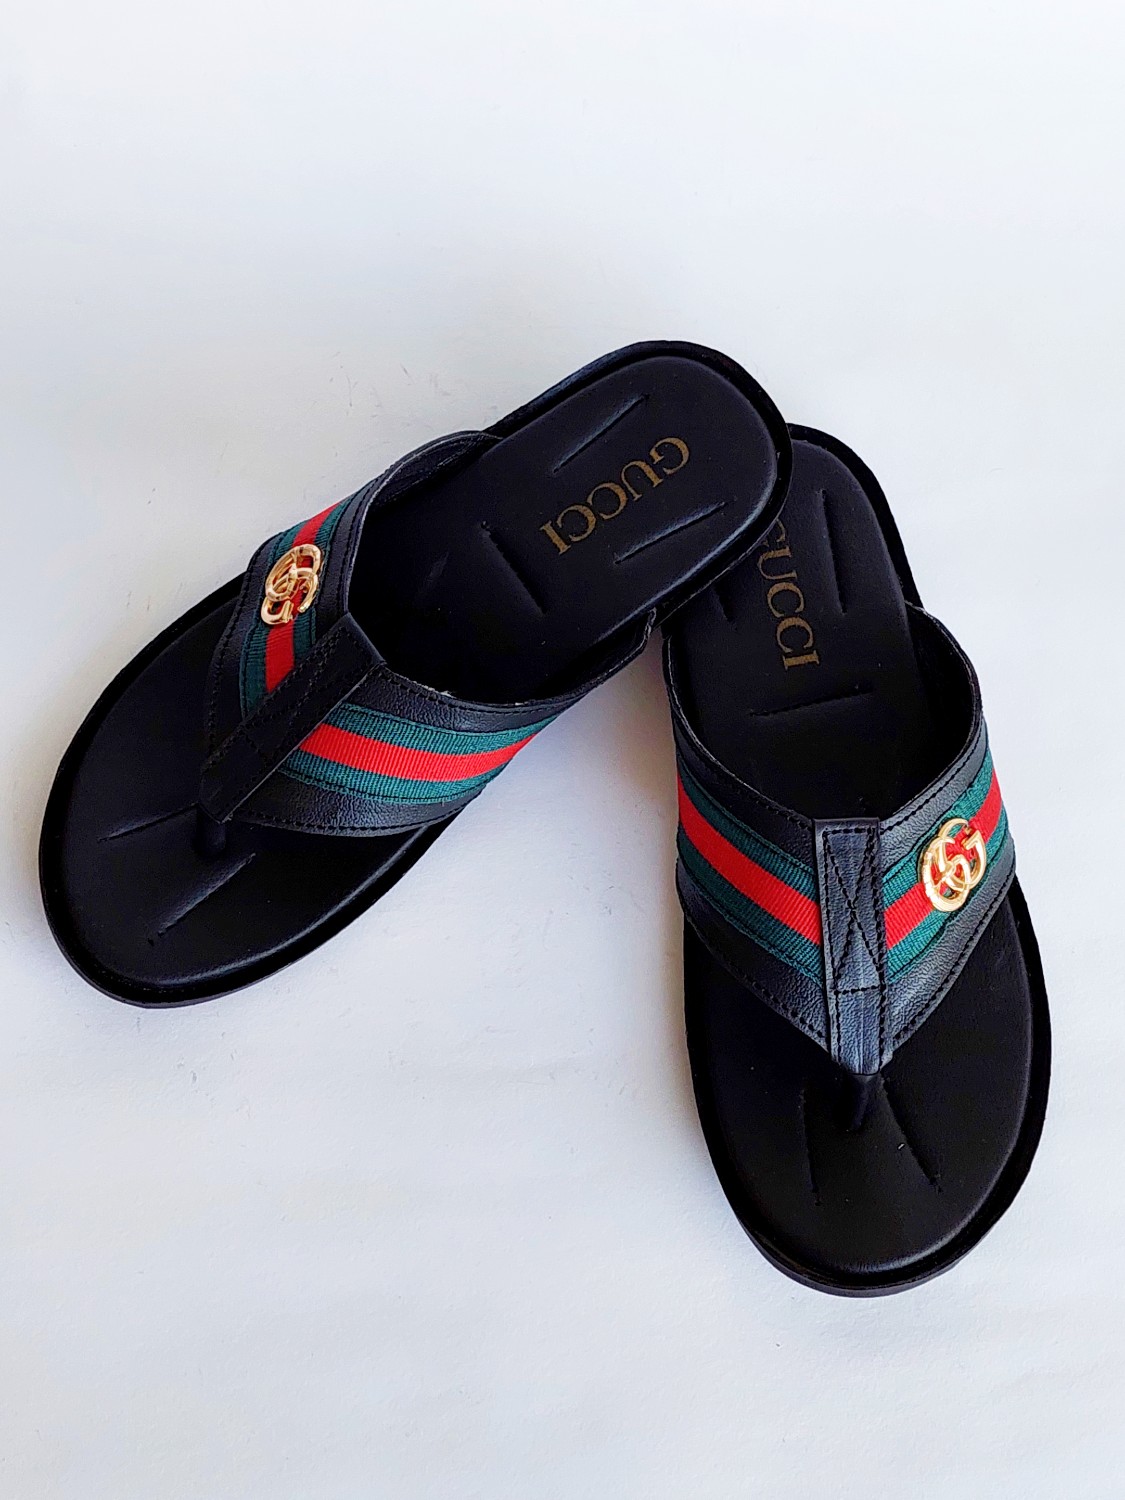 FGUC09-Branded Luxury Black Slippers For Men - Frenzy